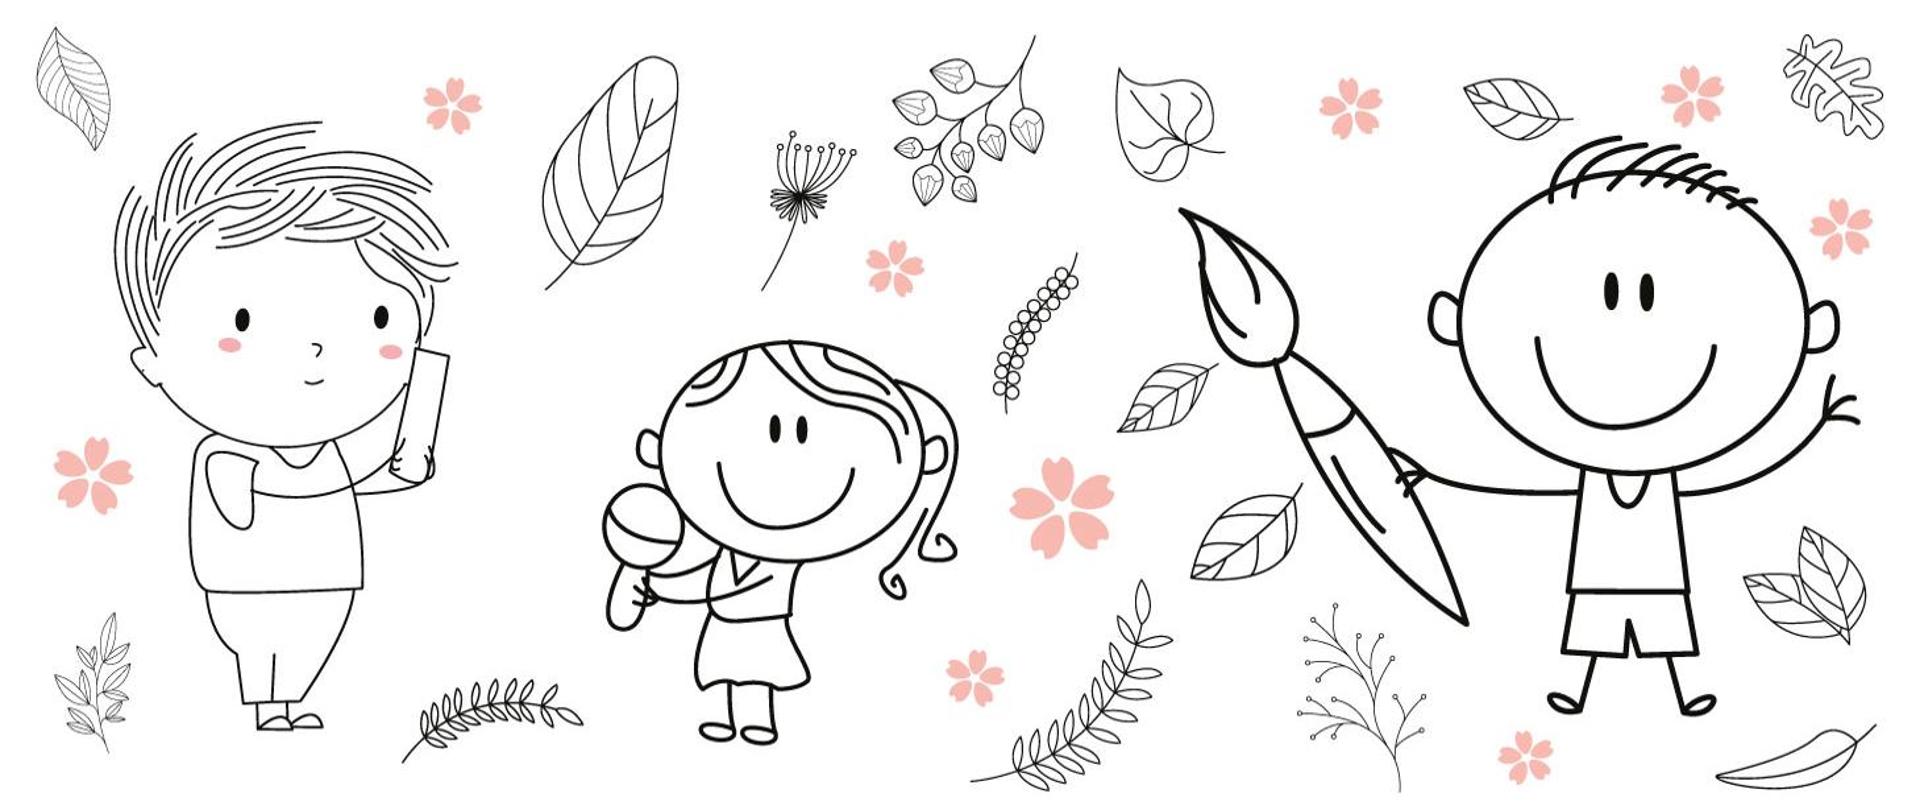 Trzy postacie dzieci przedstawione jako rysunki: jedna z nich trzyma prostokąt, druga grzechotkę, a trzecia pędzel. Wokół nich znajdują się narysowane liście drzew i kwiatów.